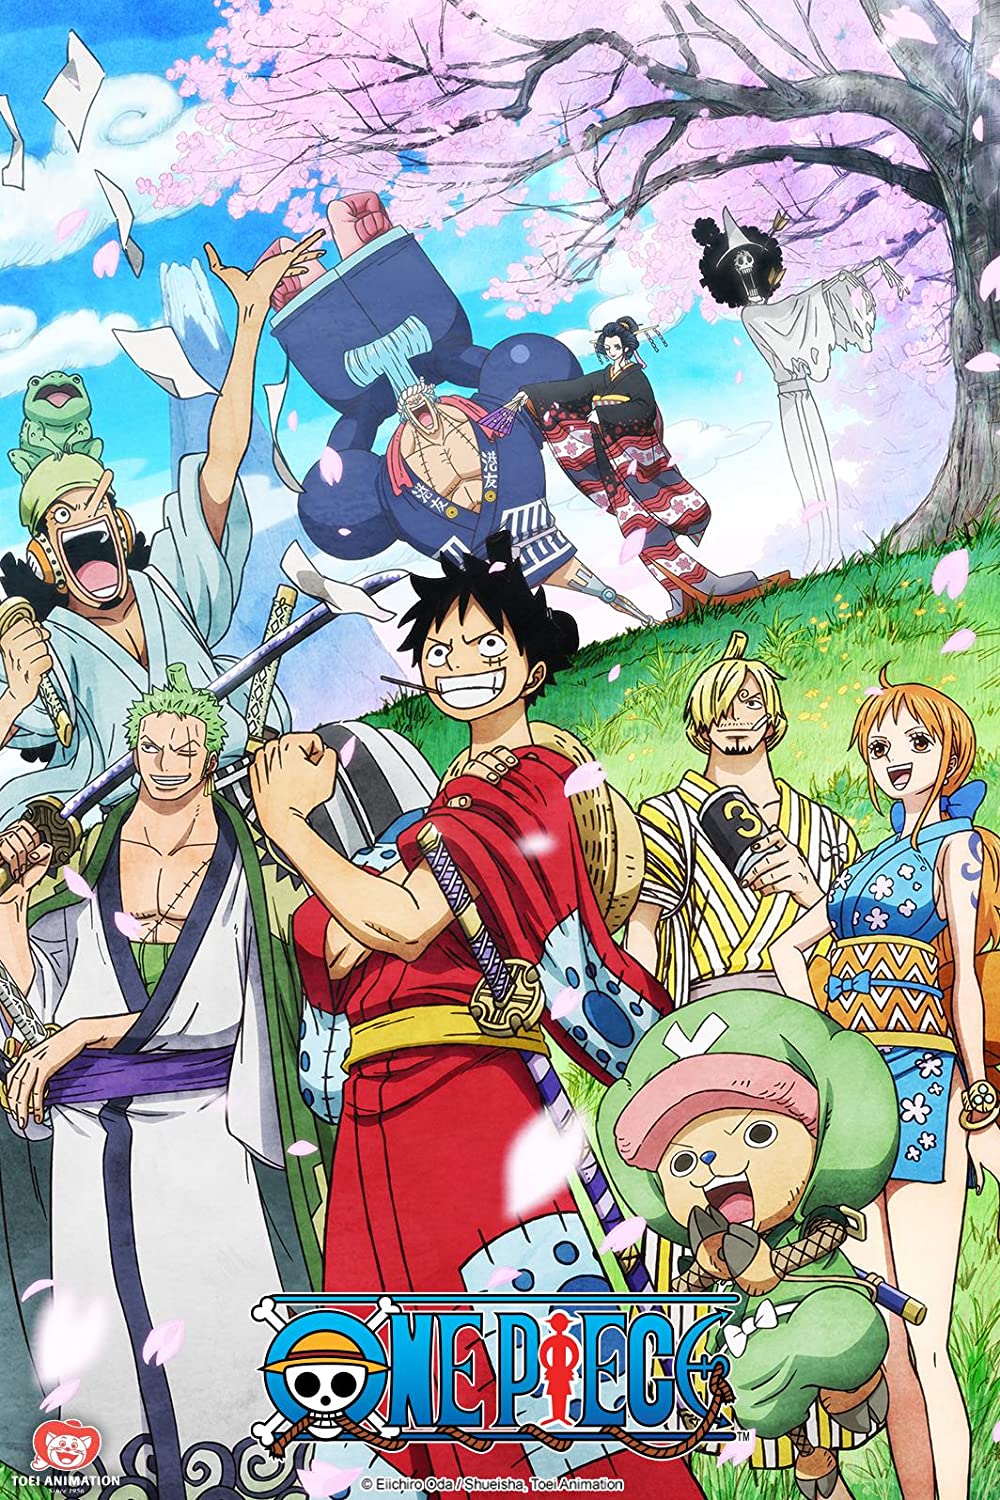 ดูหนังออนไลน์ฟรี One Piece Season 1 EP.44 วันพีช อิสท์บลู ซีซั่น 1 ตอนที่ 44